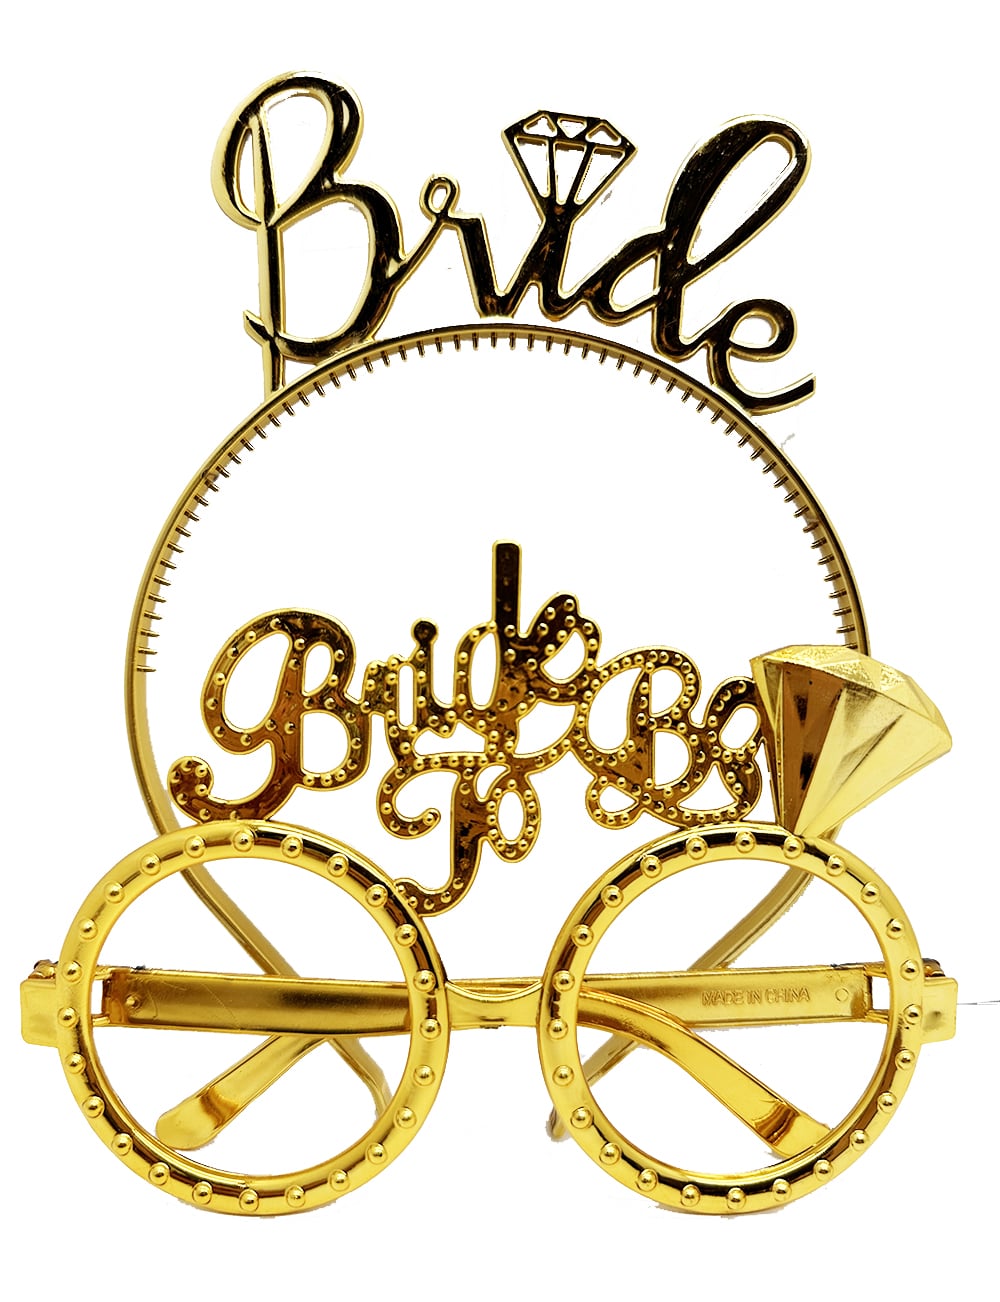 Bride Yazılı Taç ve Bride To Be Yazılı Gözlük Seti Altın Renk  (CLZ)